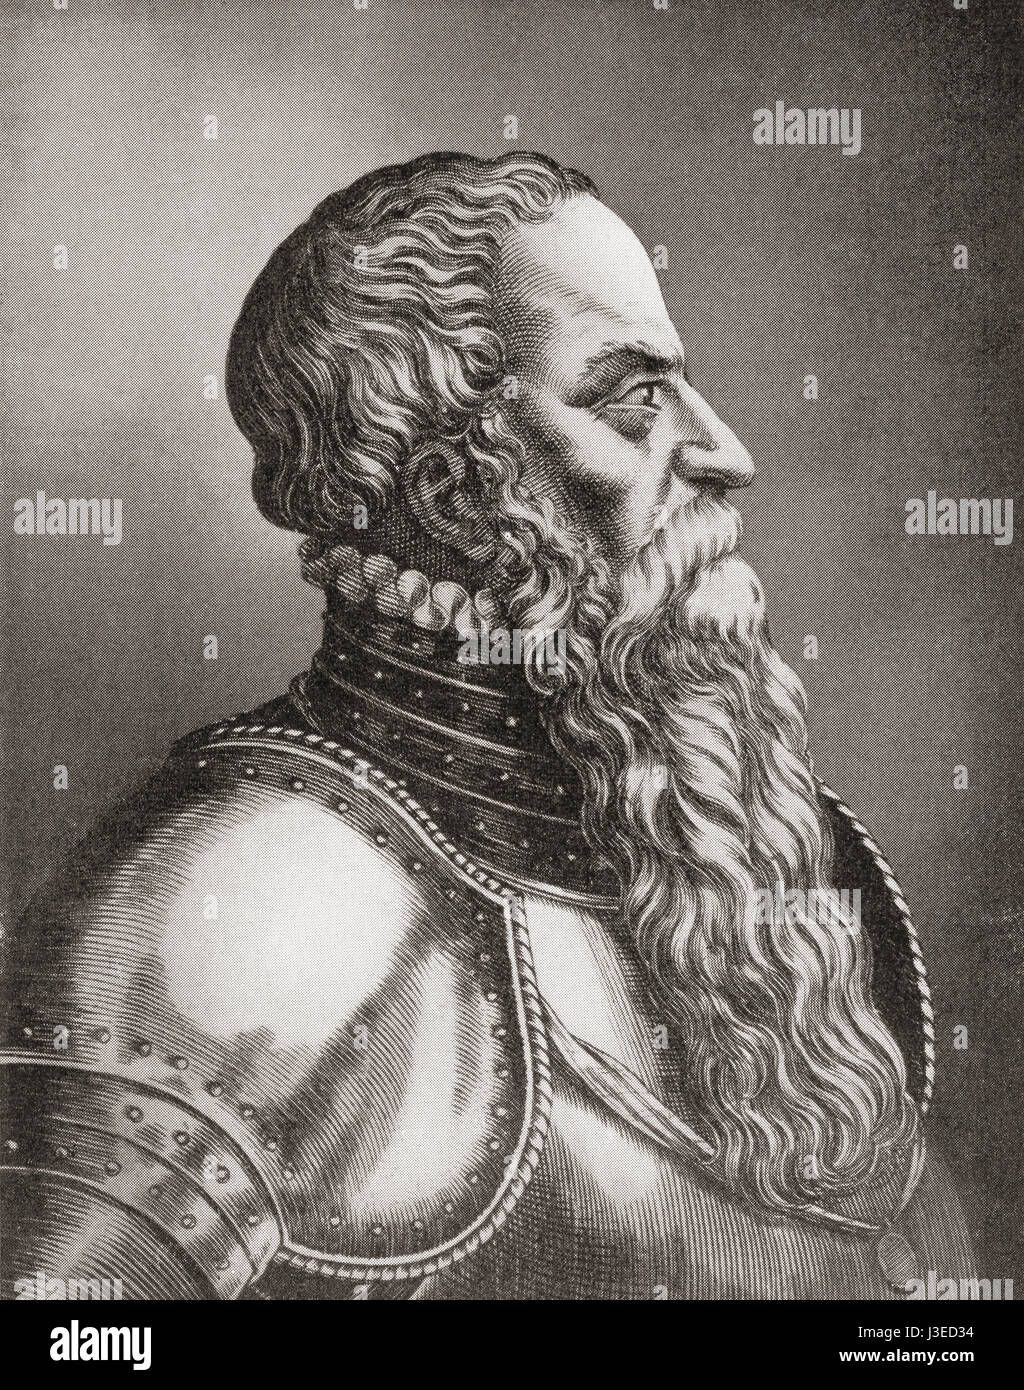 Je Gustav, Gustav Eriksson de la naissance noble famille Vasa et connu plus tard sous le nom de Gustav Vasa, 1496 - 1560. Roi de Suède. L'histoire de Hutchinson de l'ONU, publié en 1915. Banque D'Images